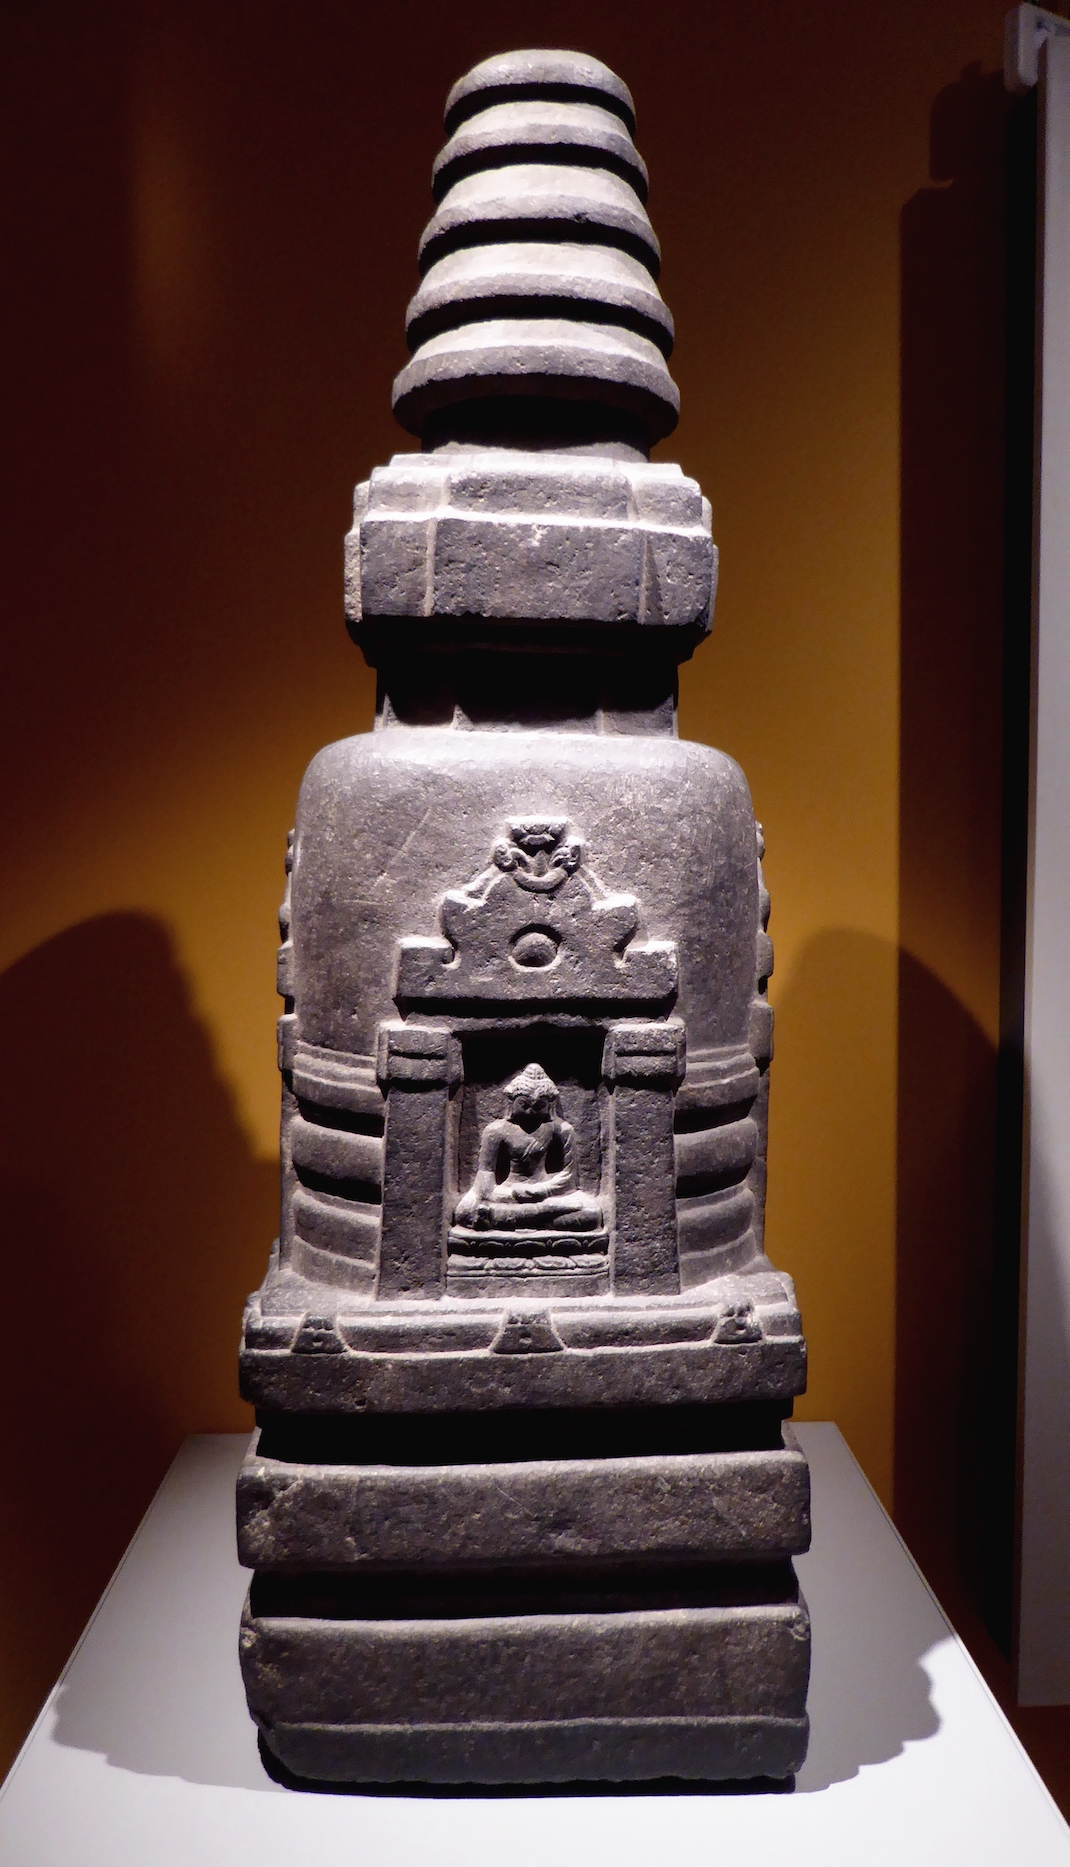 Votive Stupa, Bodhgaya, 8th century, stone, 78 x 44 x 35 cm (Ashmolean Museum, Oxford; photo: Ethan Doyle White, CC BY-SA 4.0)